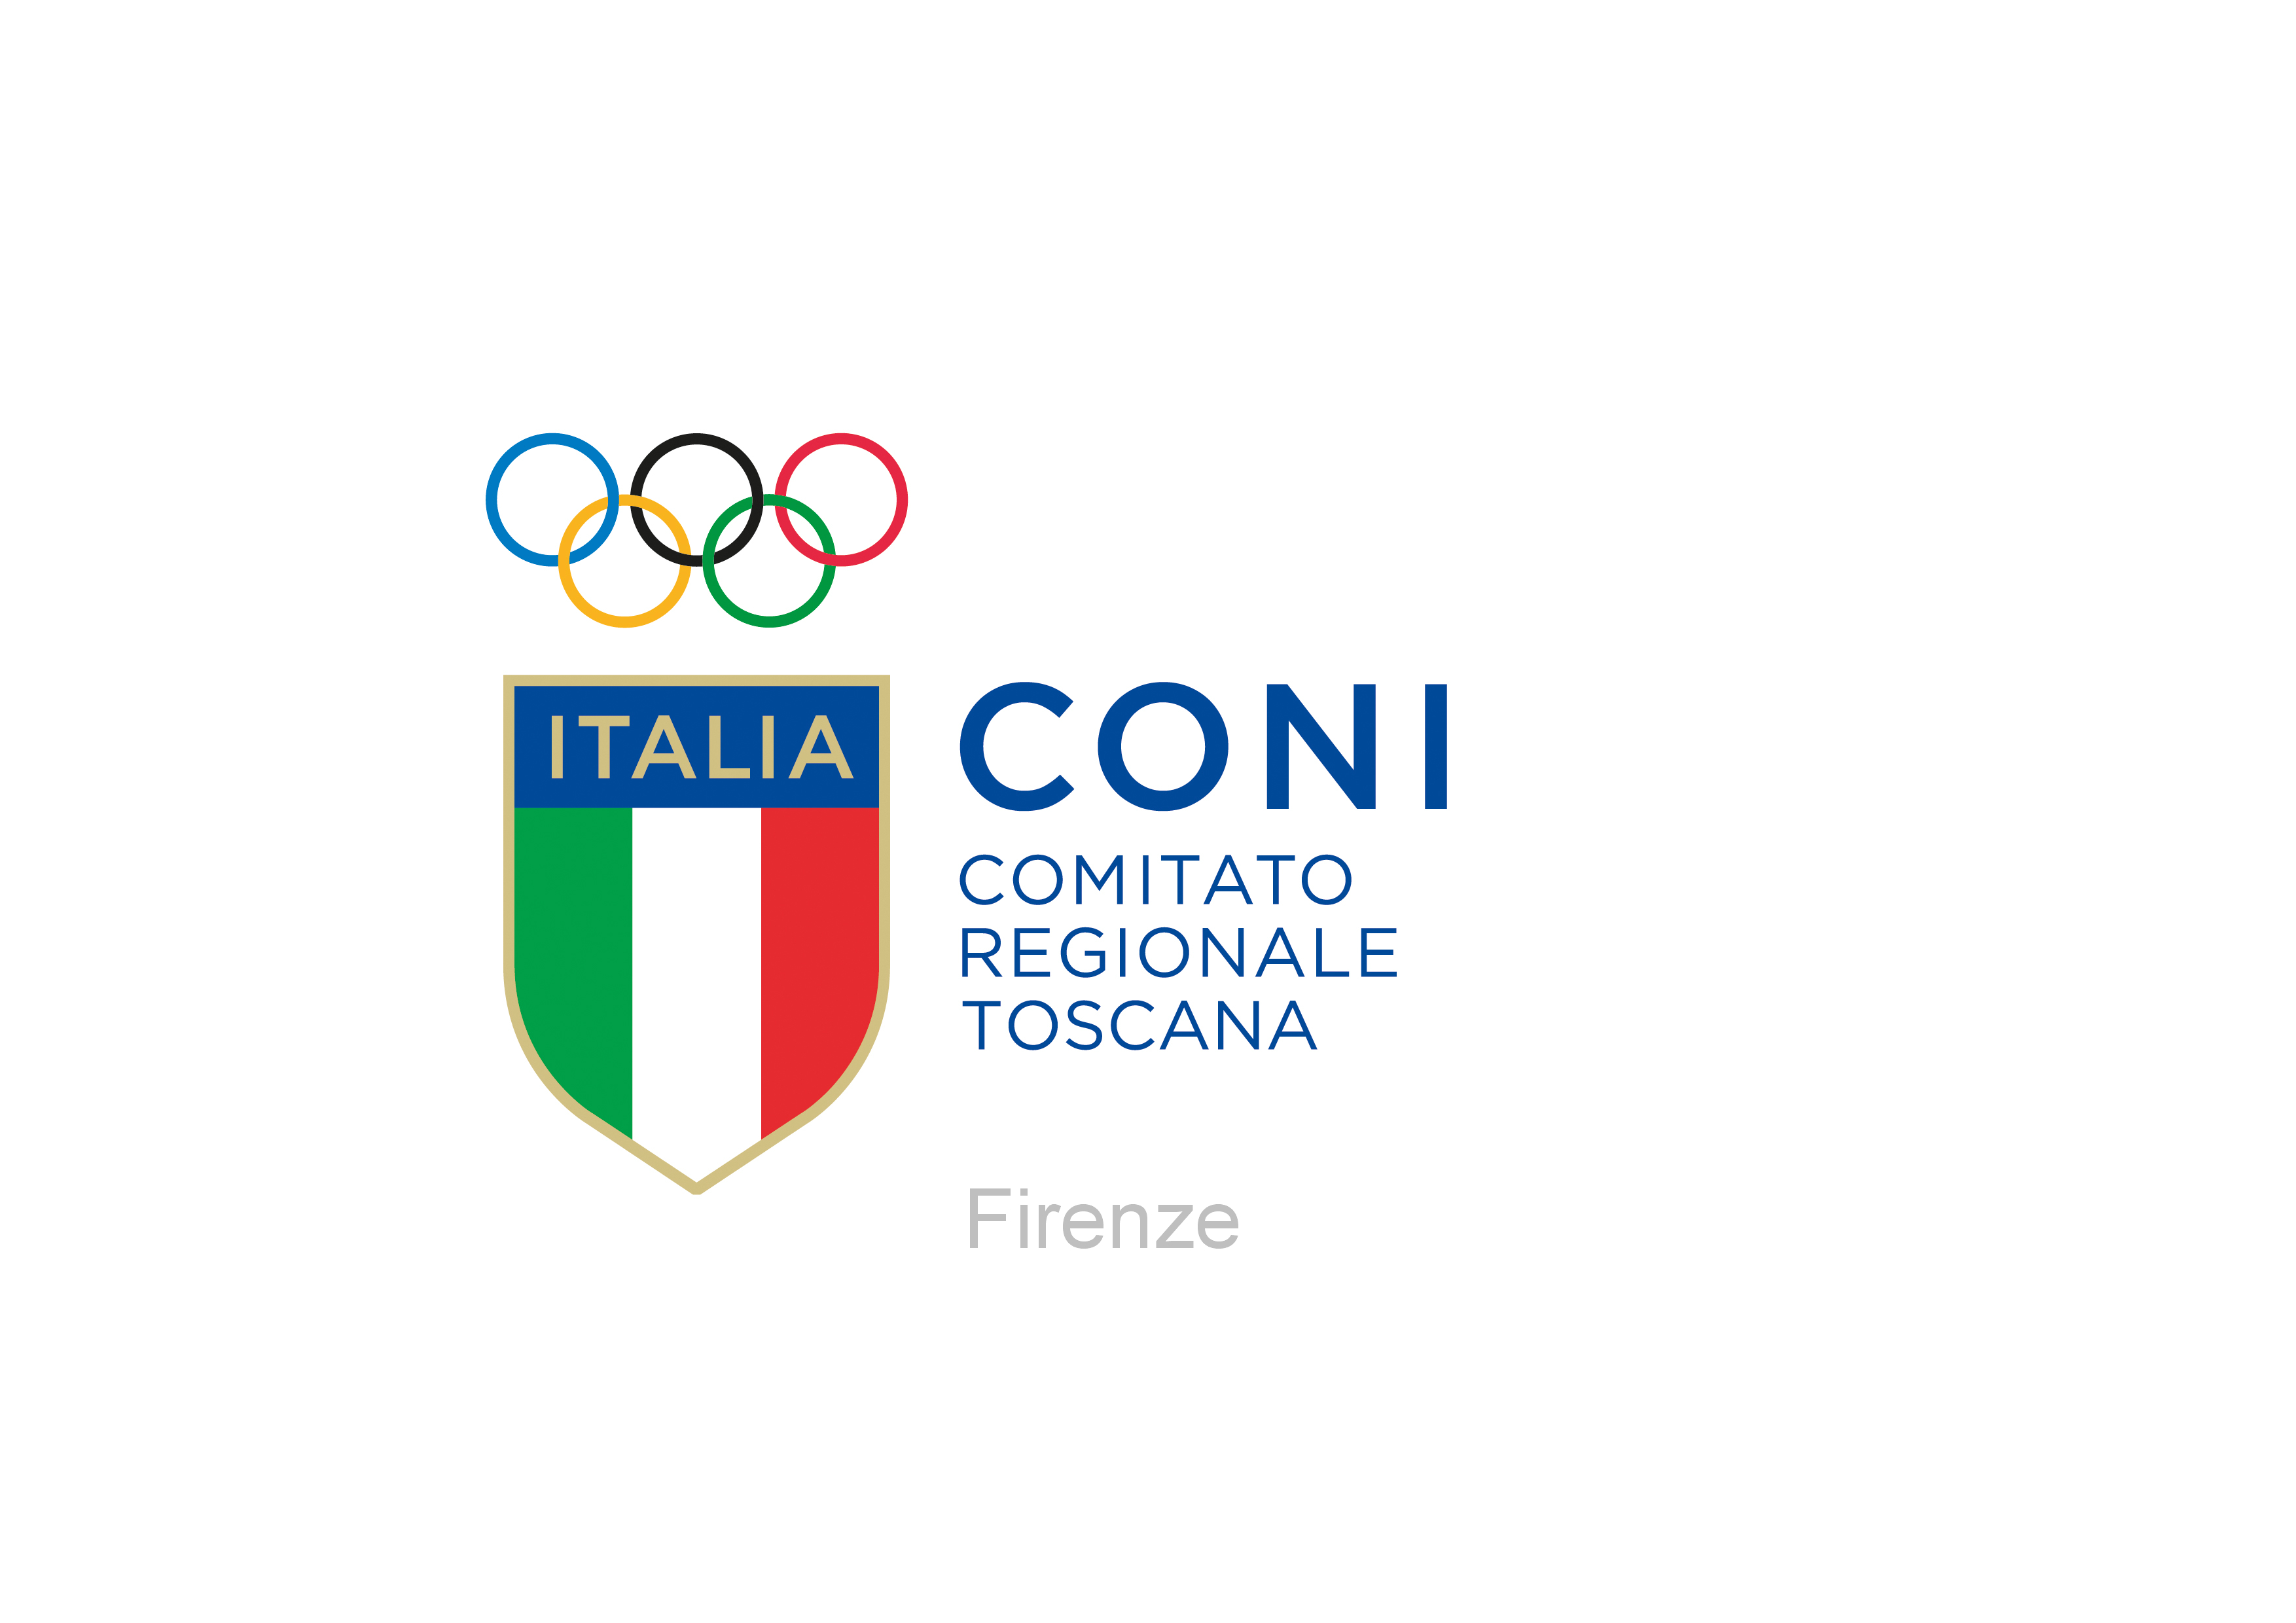 CONI Comitato Regionale Toscana